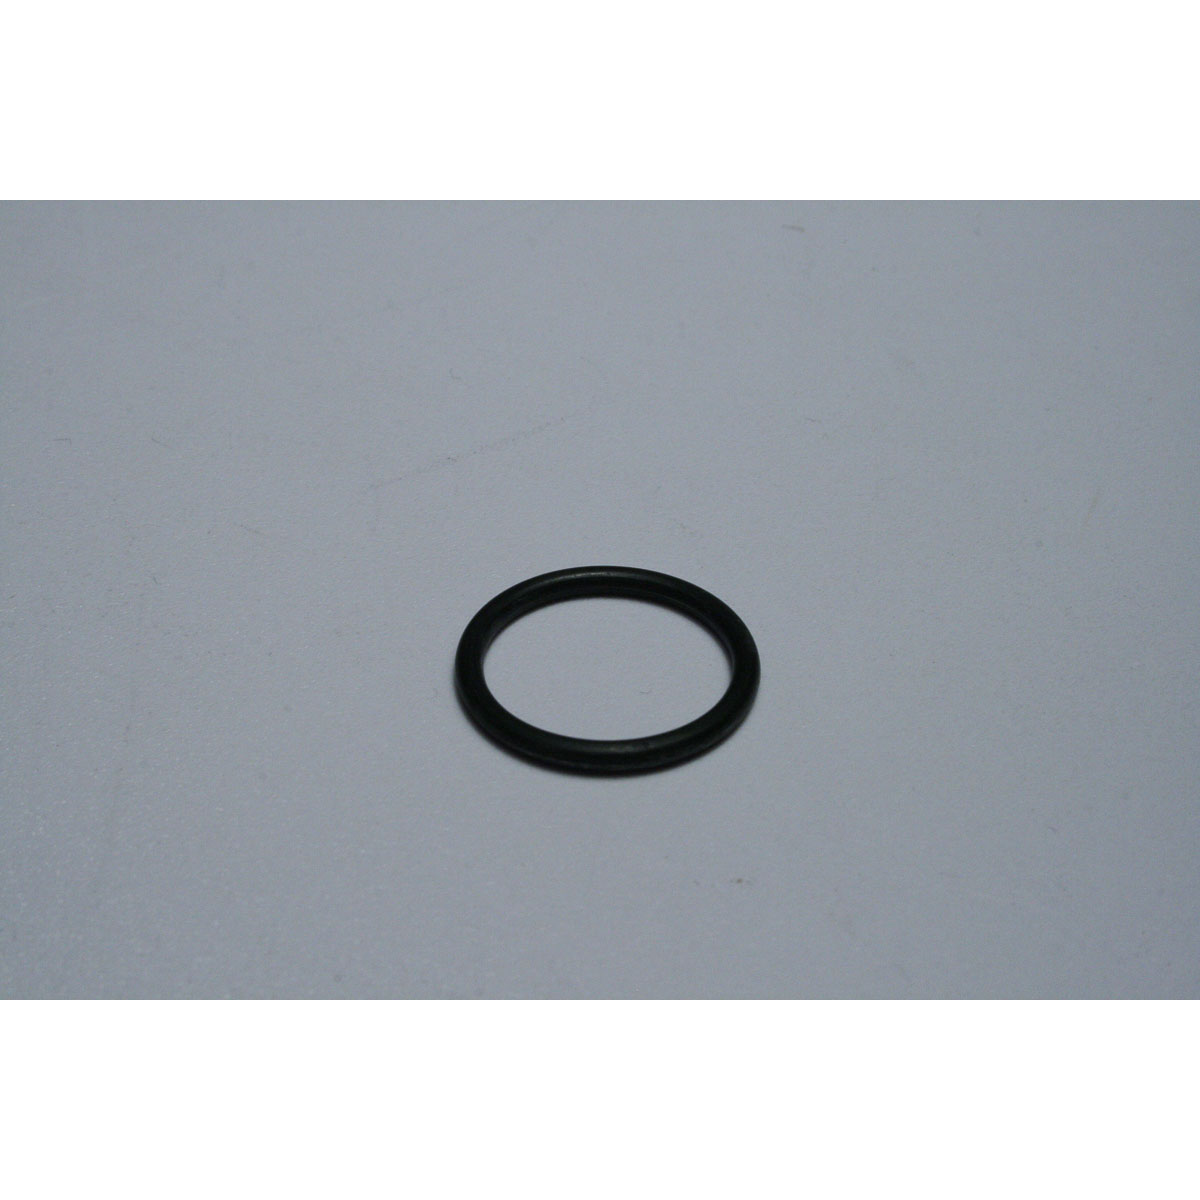 Kartech Brake Master Cylinder Reservoir O-Ring - Fits Single & Dual Billet System